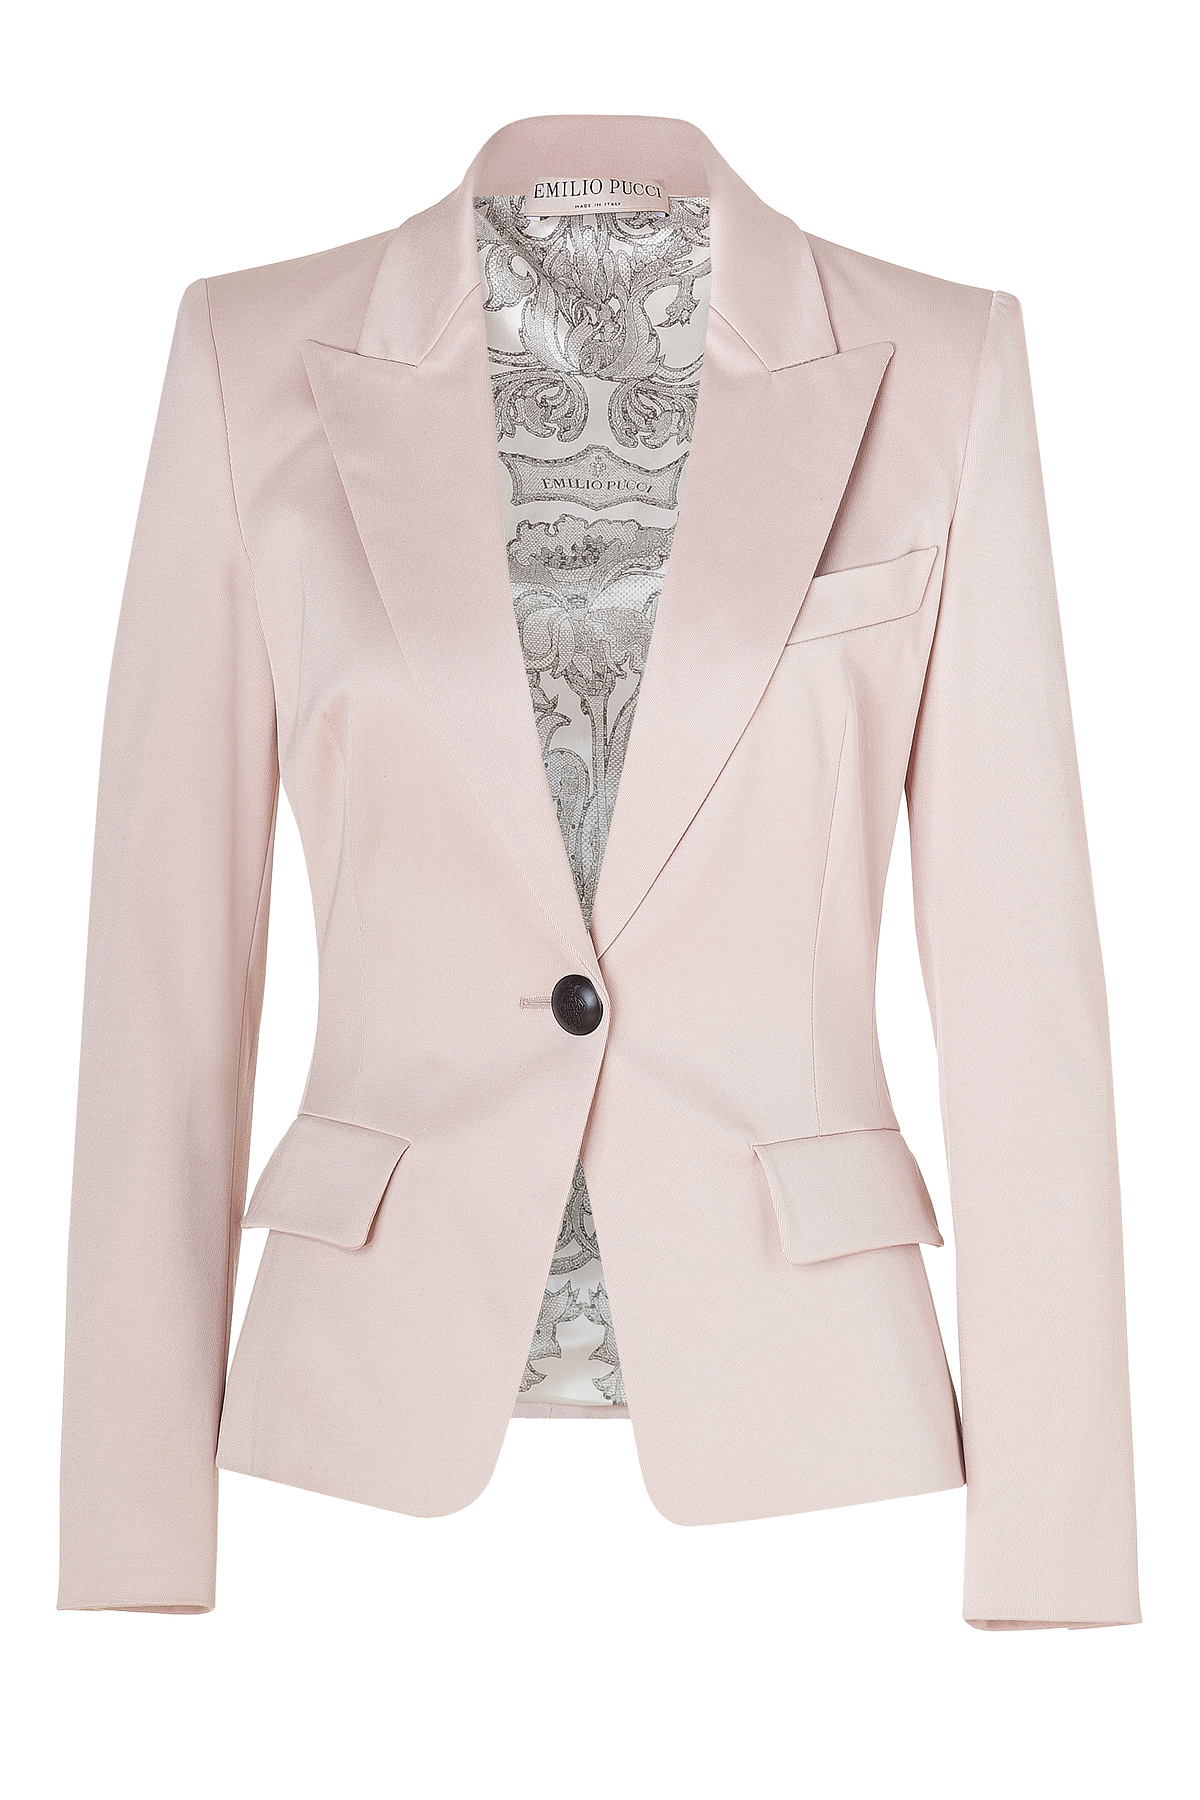 Emilio Pucci Blush One Button Stretch Cotton Blazer in Pink (blush) | Lyst